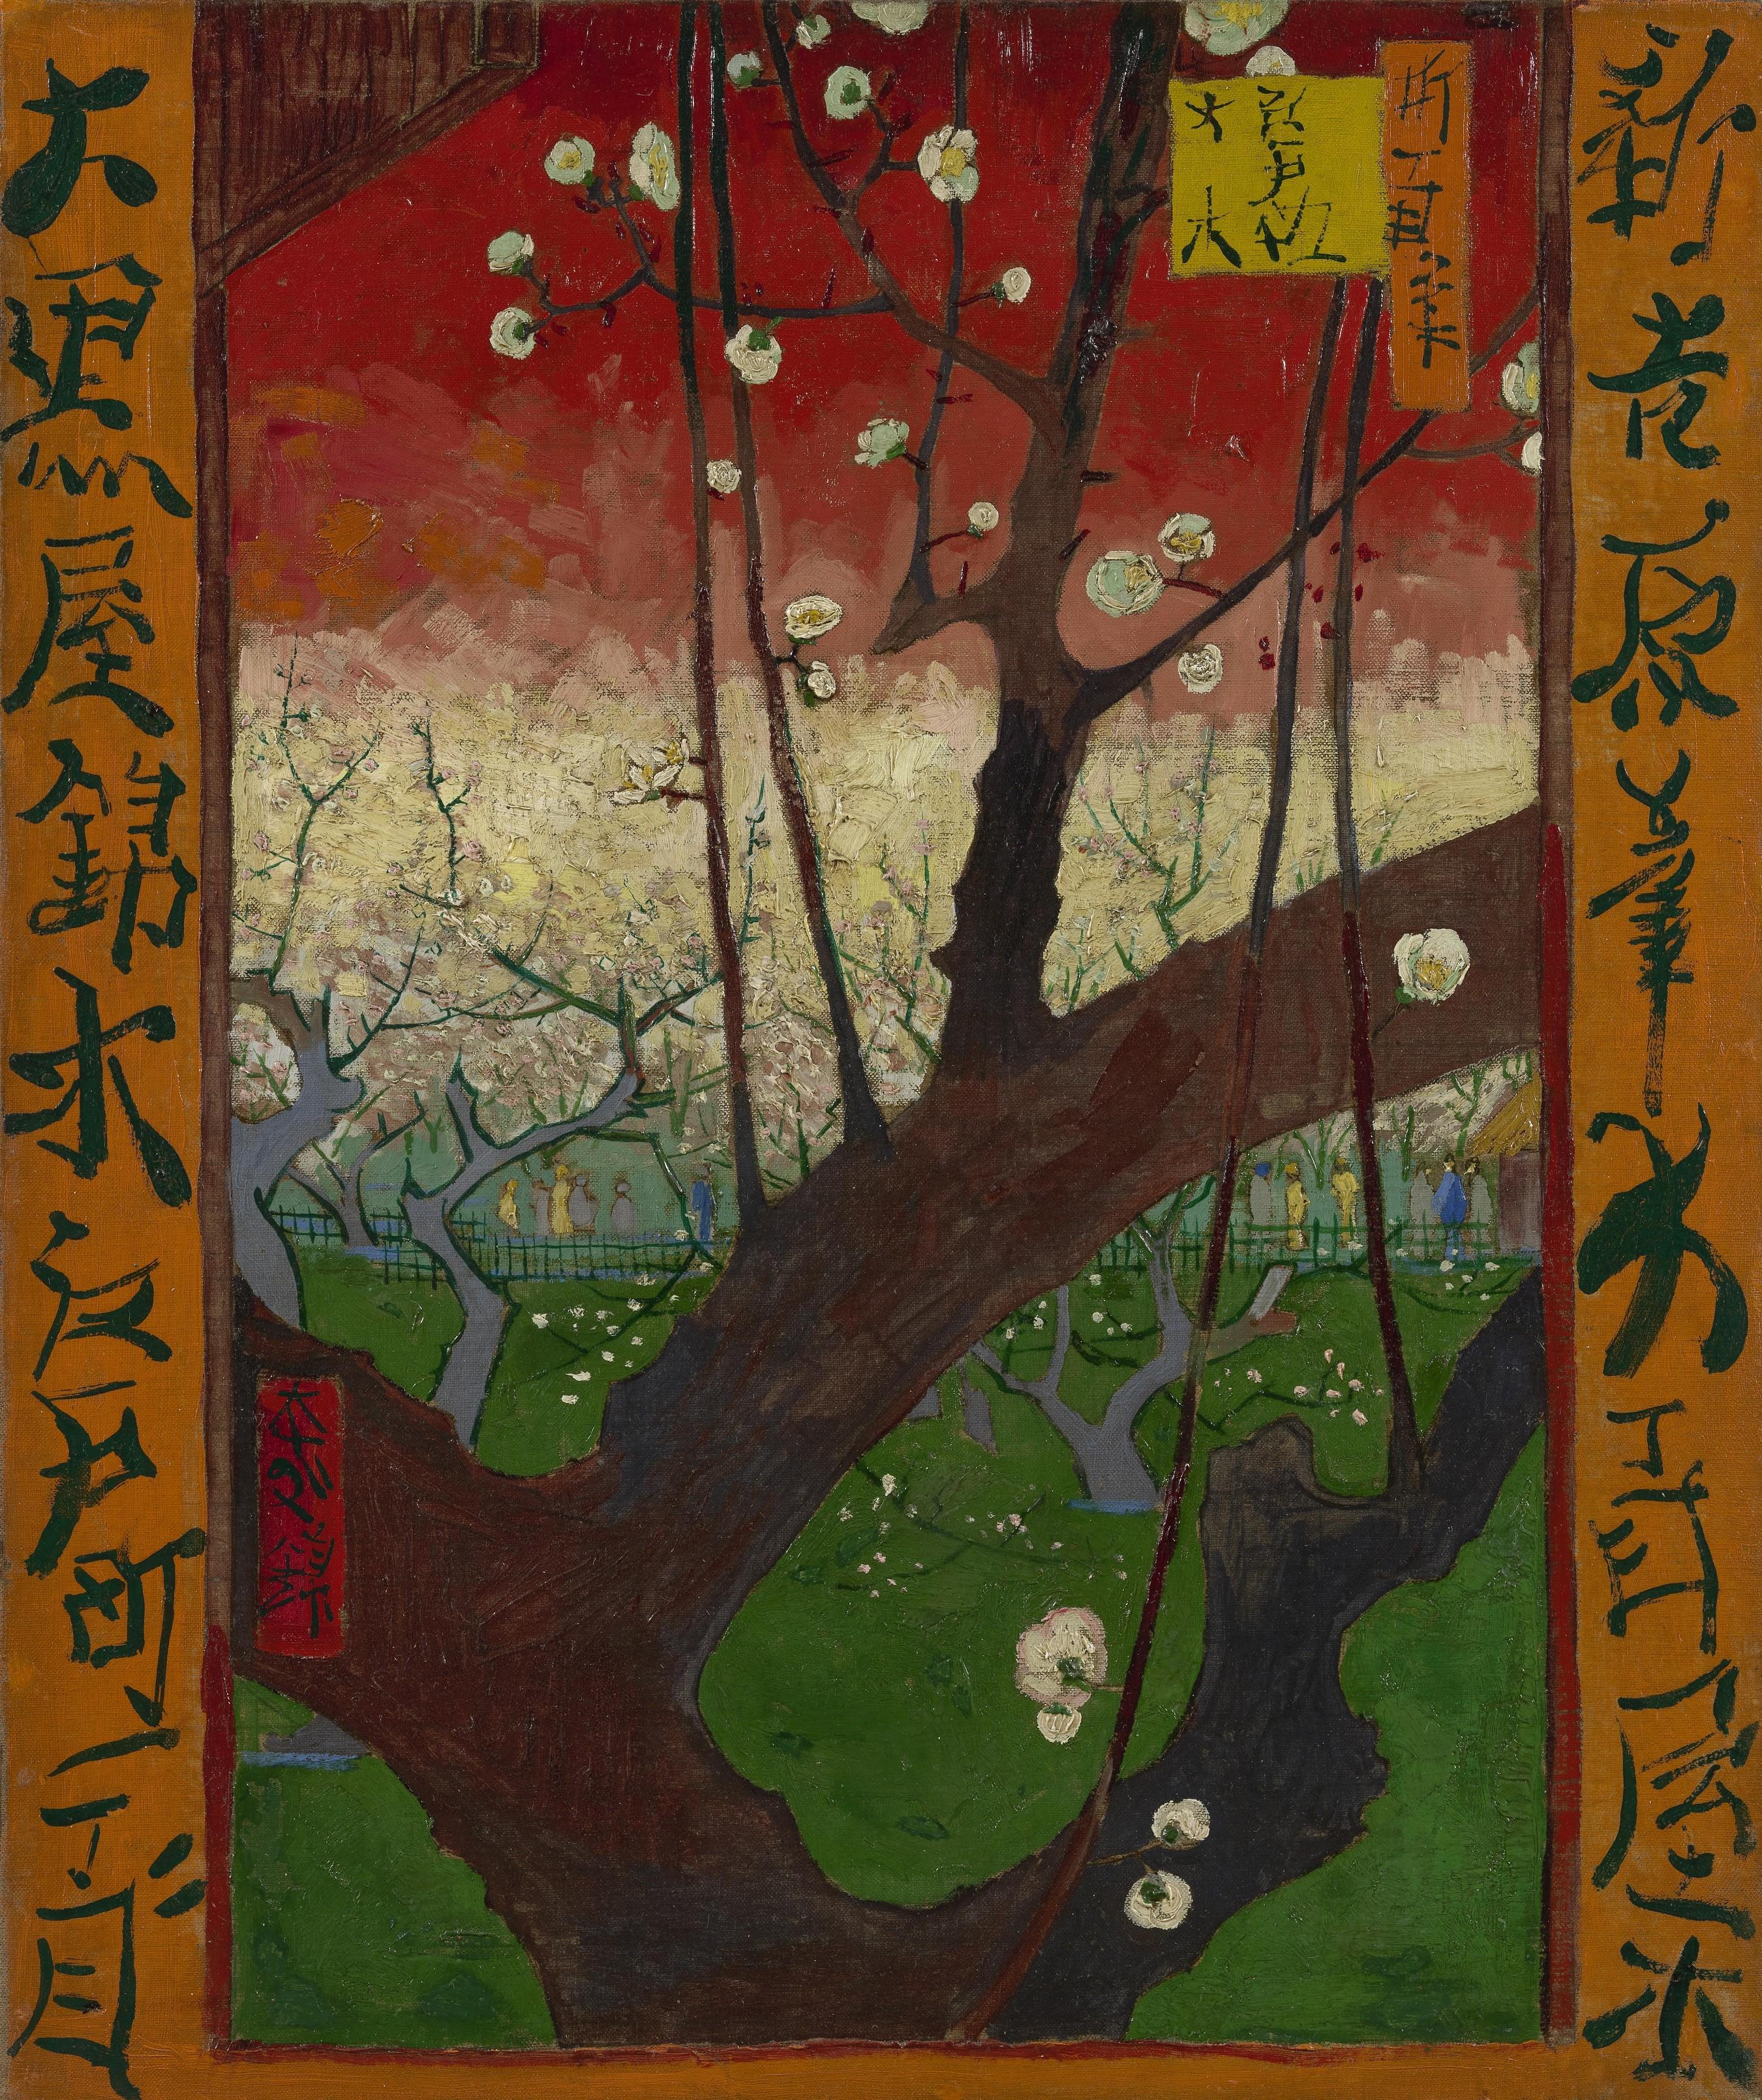 Comment Vincent van Gogh de la Collection d'Estampes Japonaises Inspiré de Son "Art de l'Avenir"